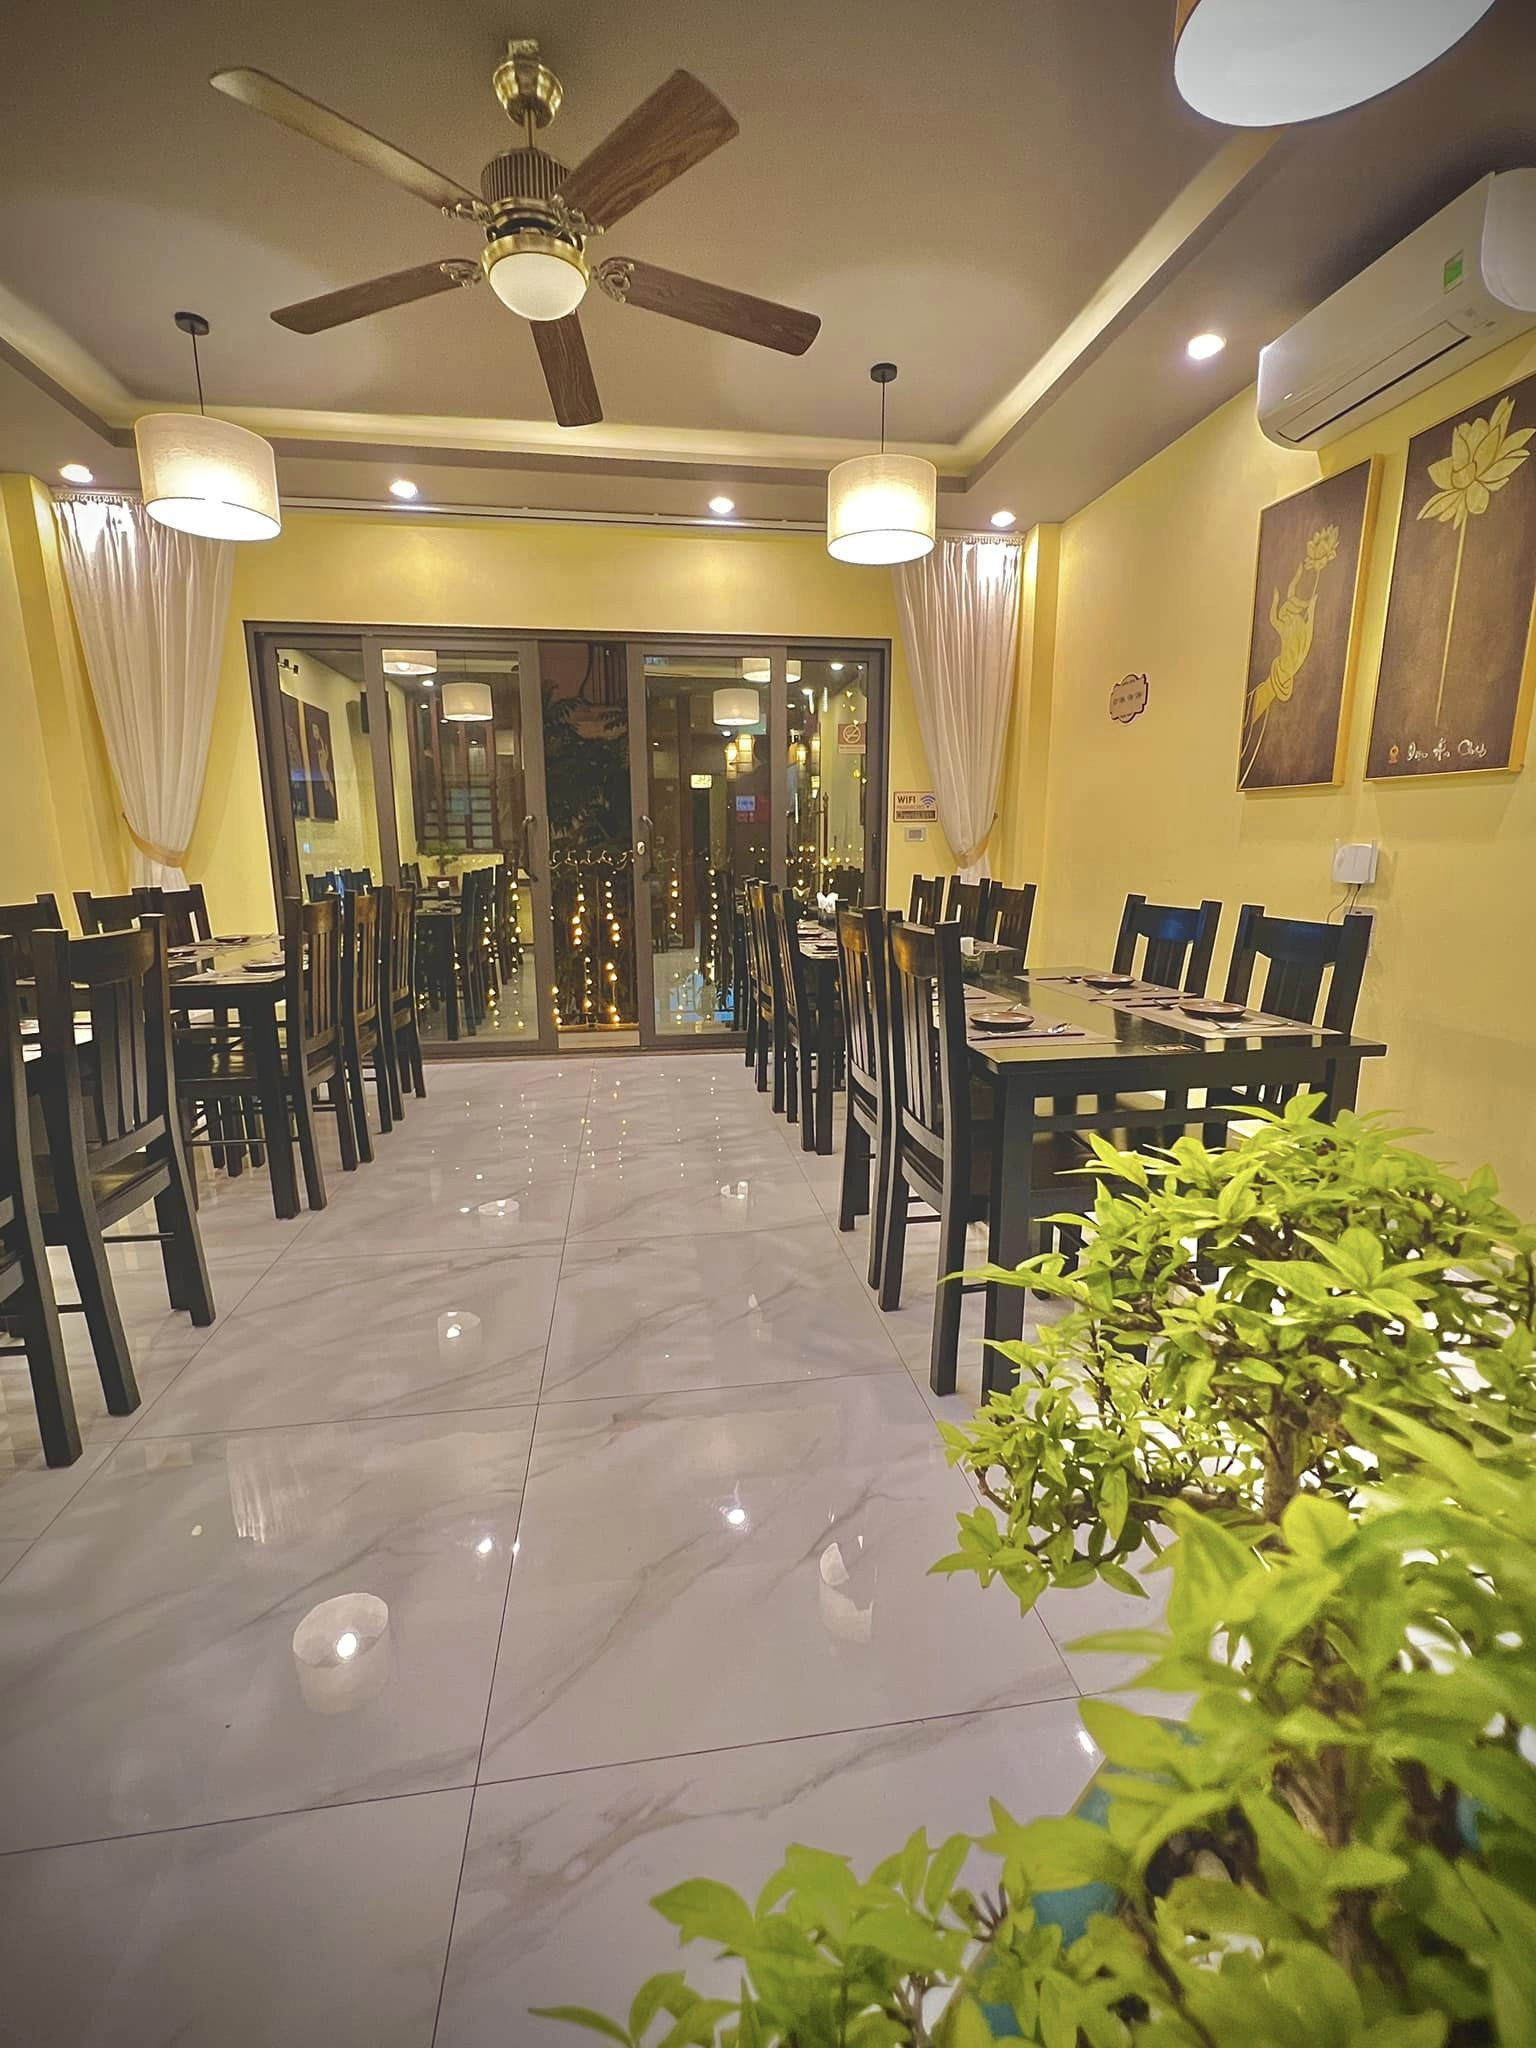 Cần sang nhượng Nhà hàng chay đang hoạt động tại phố Nguyễn Sơn, Long Biên, Hà Nội - Ảnh 1